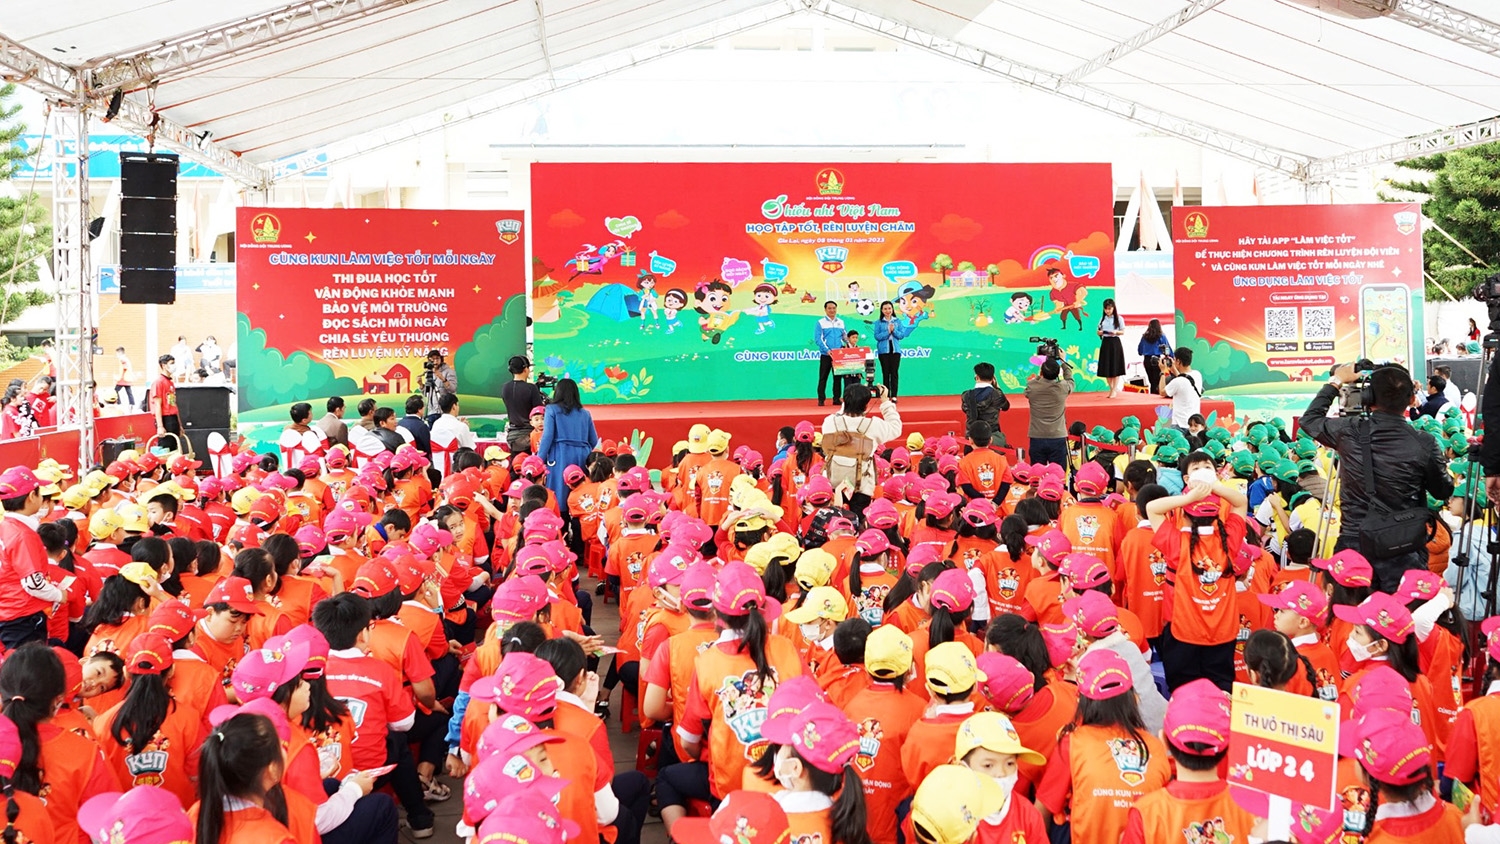 2.000 thiếu nhi Gia Lai sôi nổi tham gia ngày hội "Thiếu nhi Việt Nam - Học tập tốt, rèn luyện chăm"